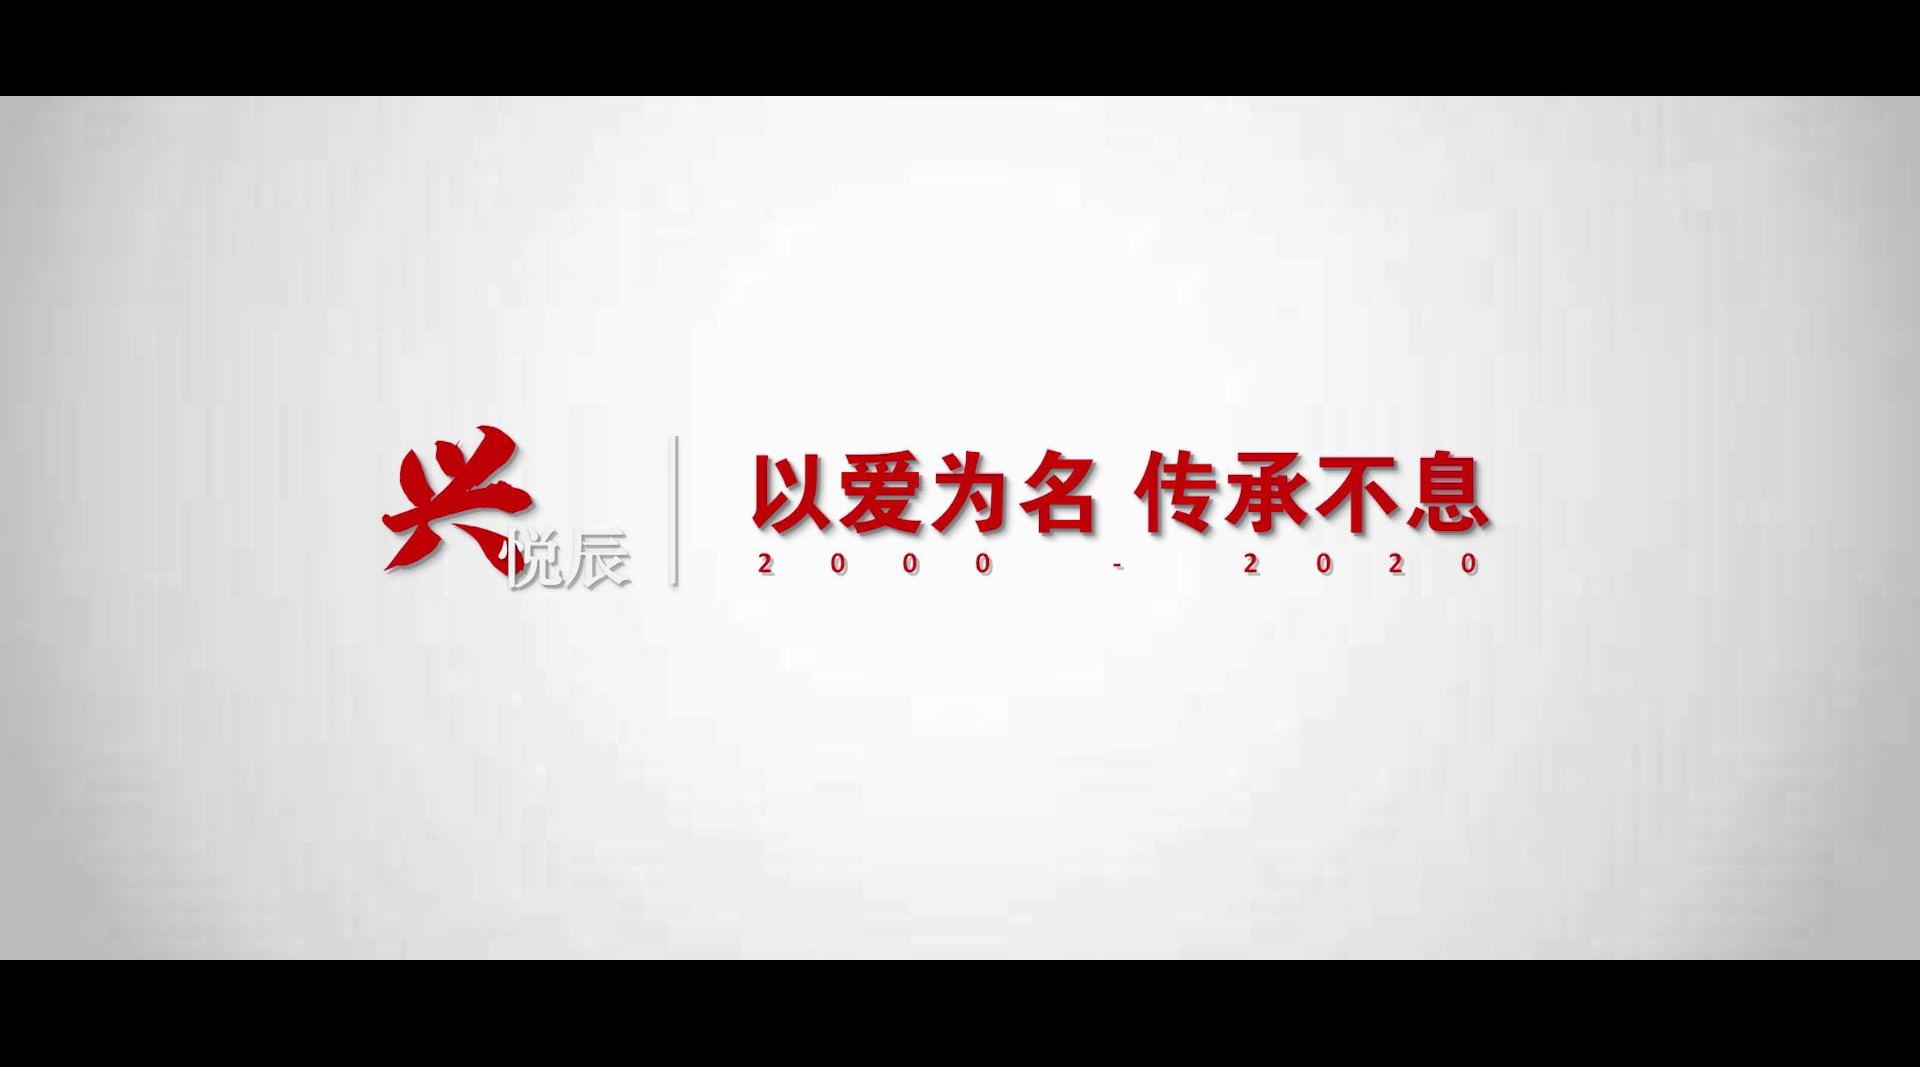 《兴悦辰—以爱为名，传承不息》形象宣传片 